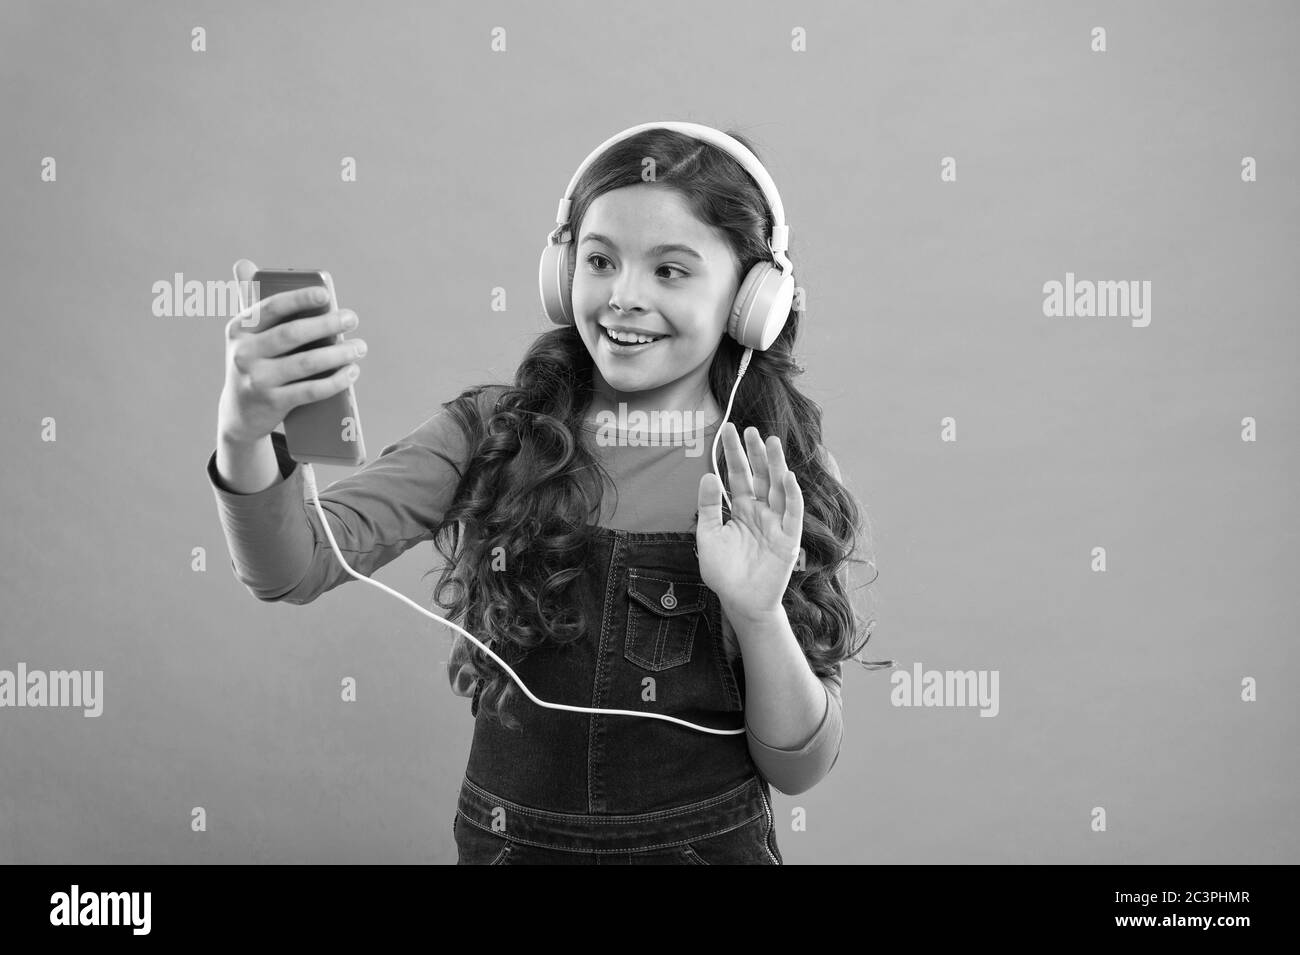 Hallo. Langes Haar für Kinder machen selfie im Headset. Kleines Kind  erstellen Spielliste auf Smartphone. Kleines Mädchen verwenden MP3-Player.  Studieren im modernen Leben. Schulmädchen verwenden digitales Gerät.  Freizeit für Kinder Stockfotografie -